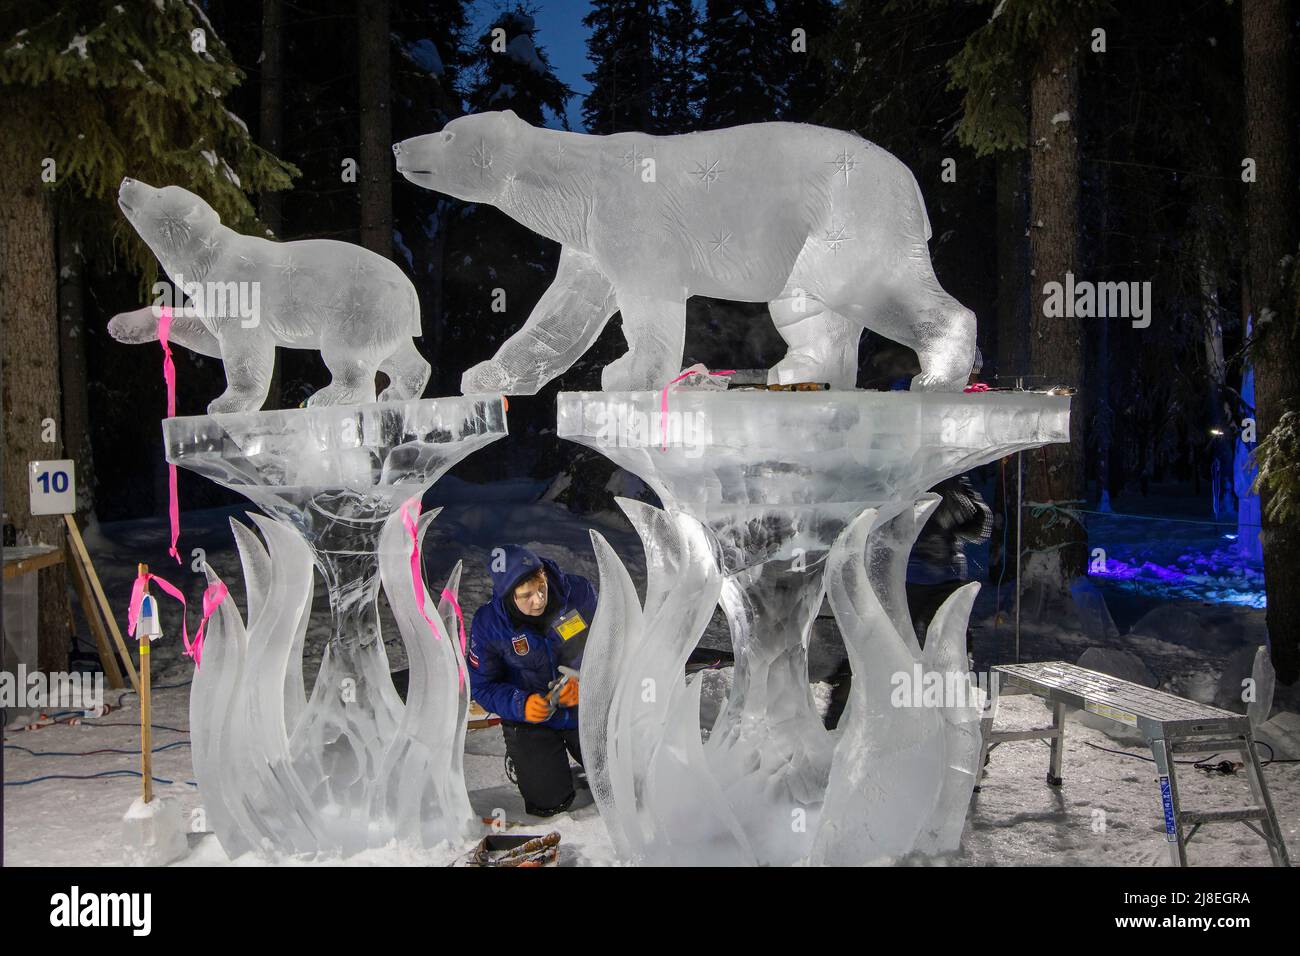 El hombre trabaja para esculpir hielo de talla de oso, uno de los muchos carrvngs de hielo vistos en el Campeonato Mundial de Arte de Hielo fuera de Fairbanks, AK, en febrero. Foto de stock